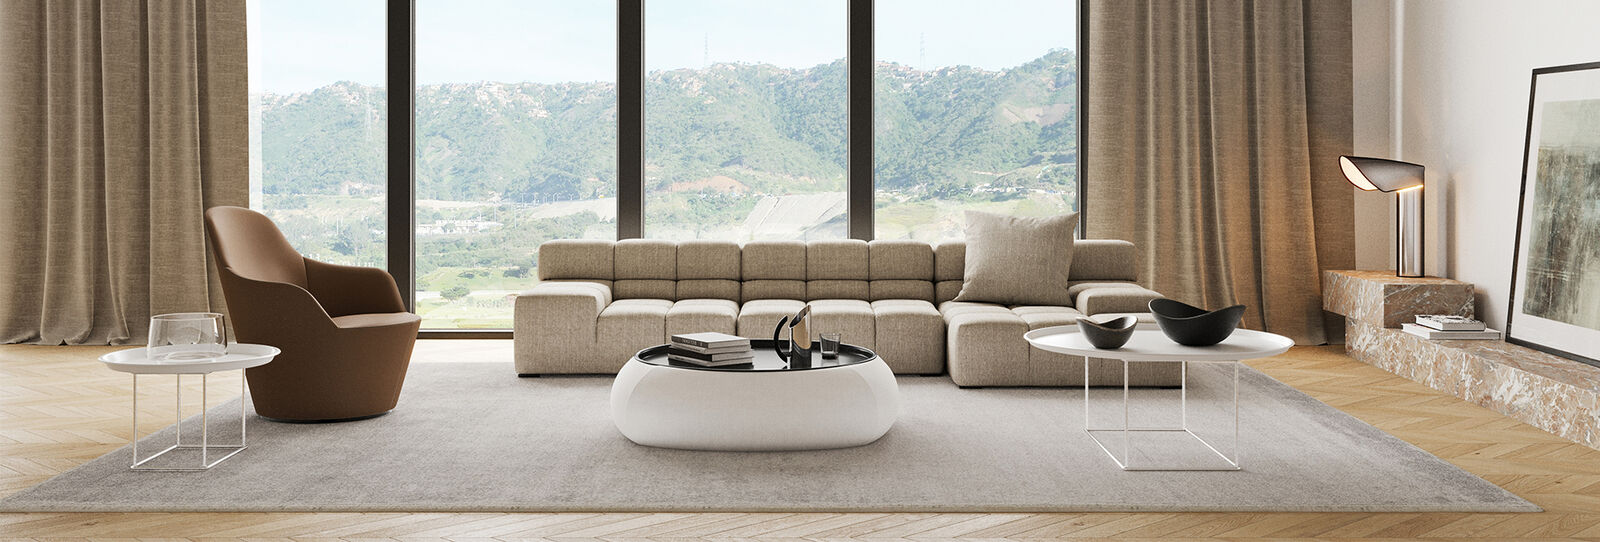 Tufty-time | B&B Italia living room